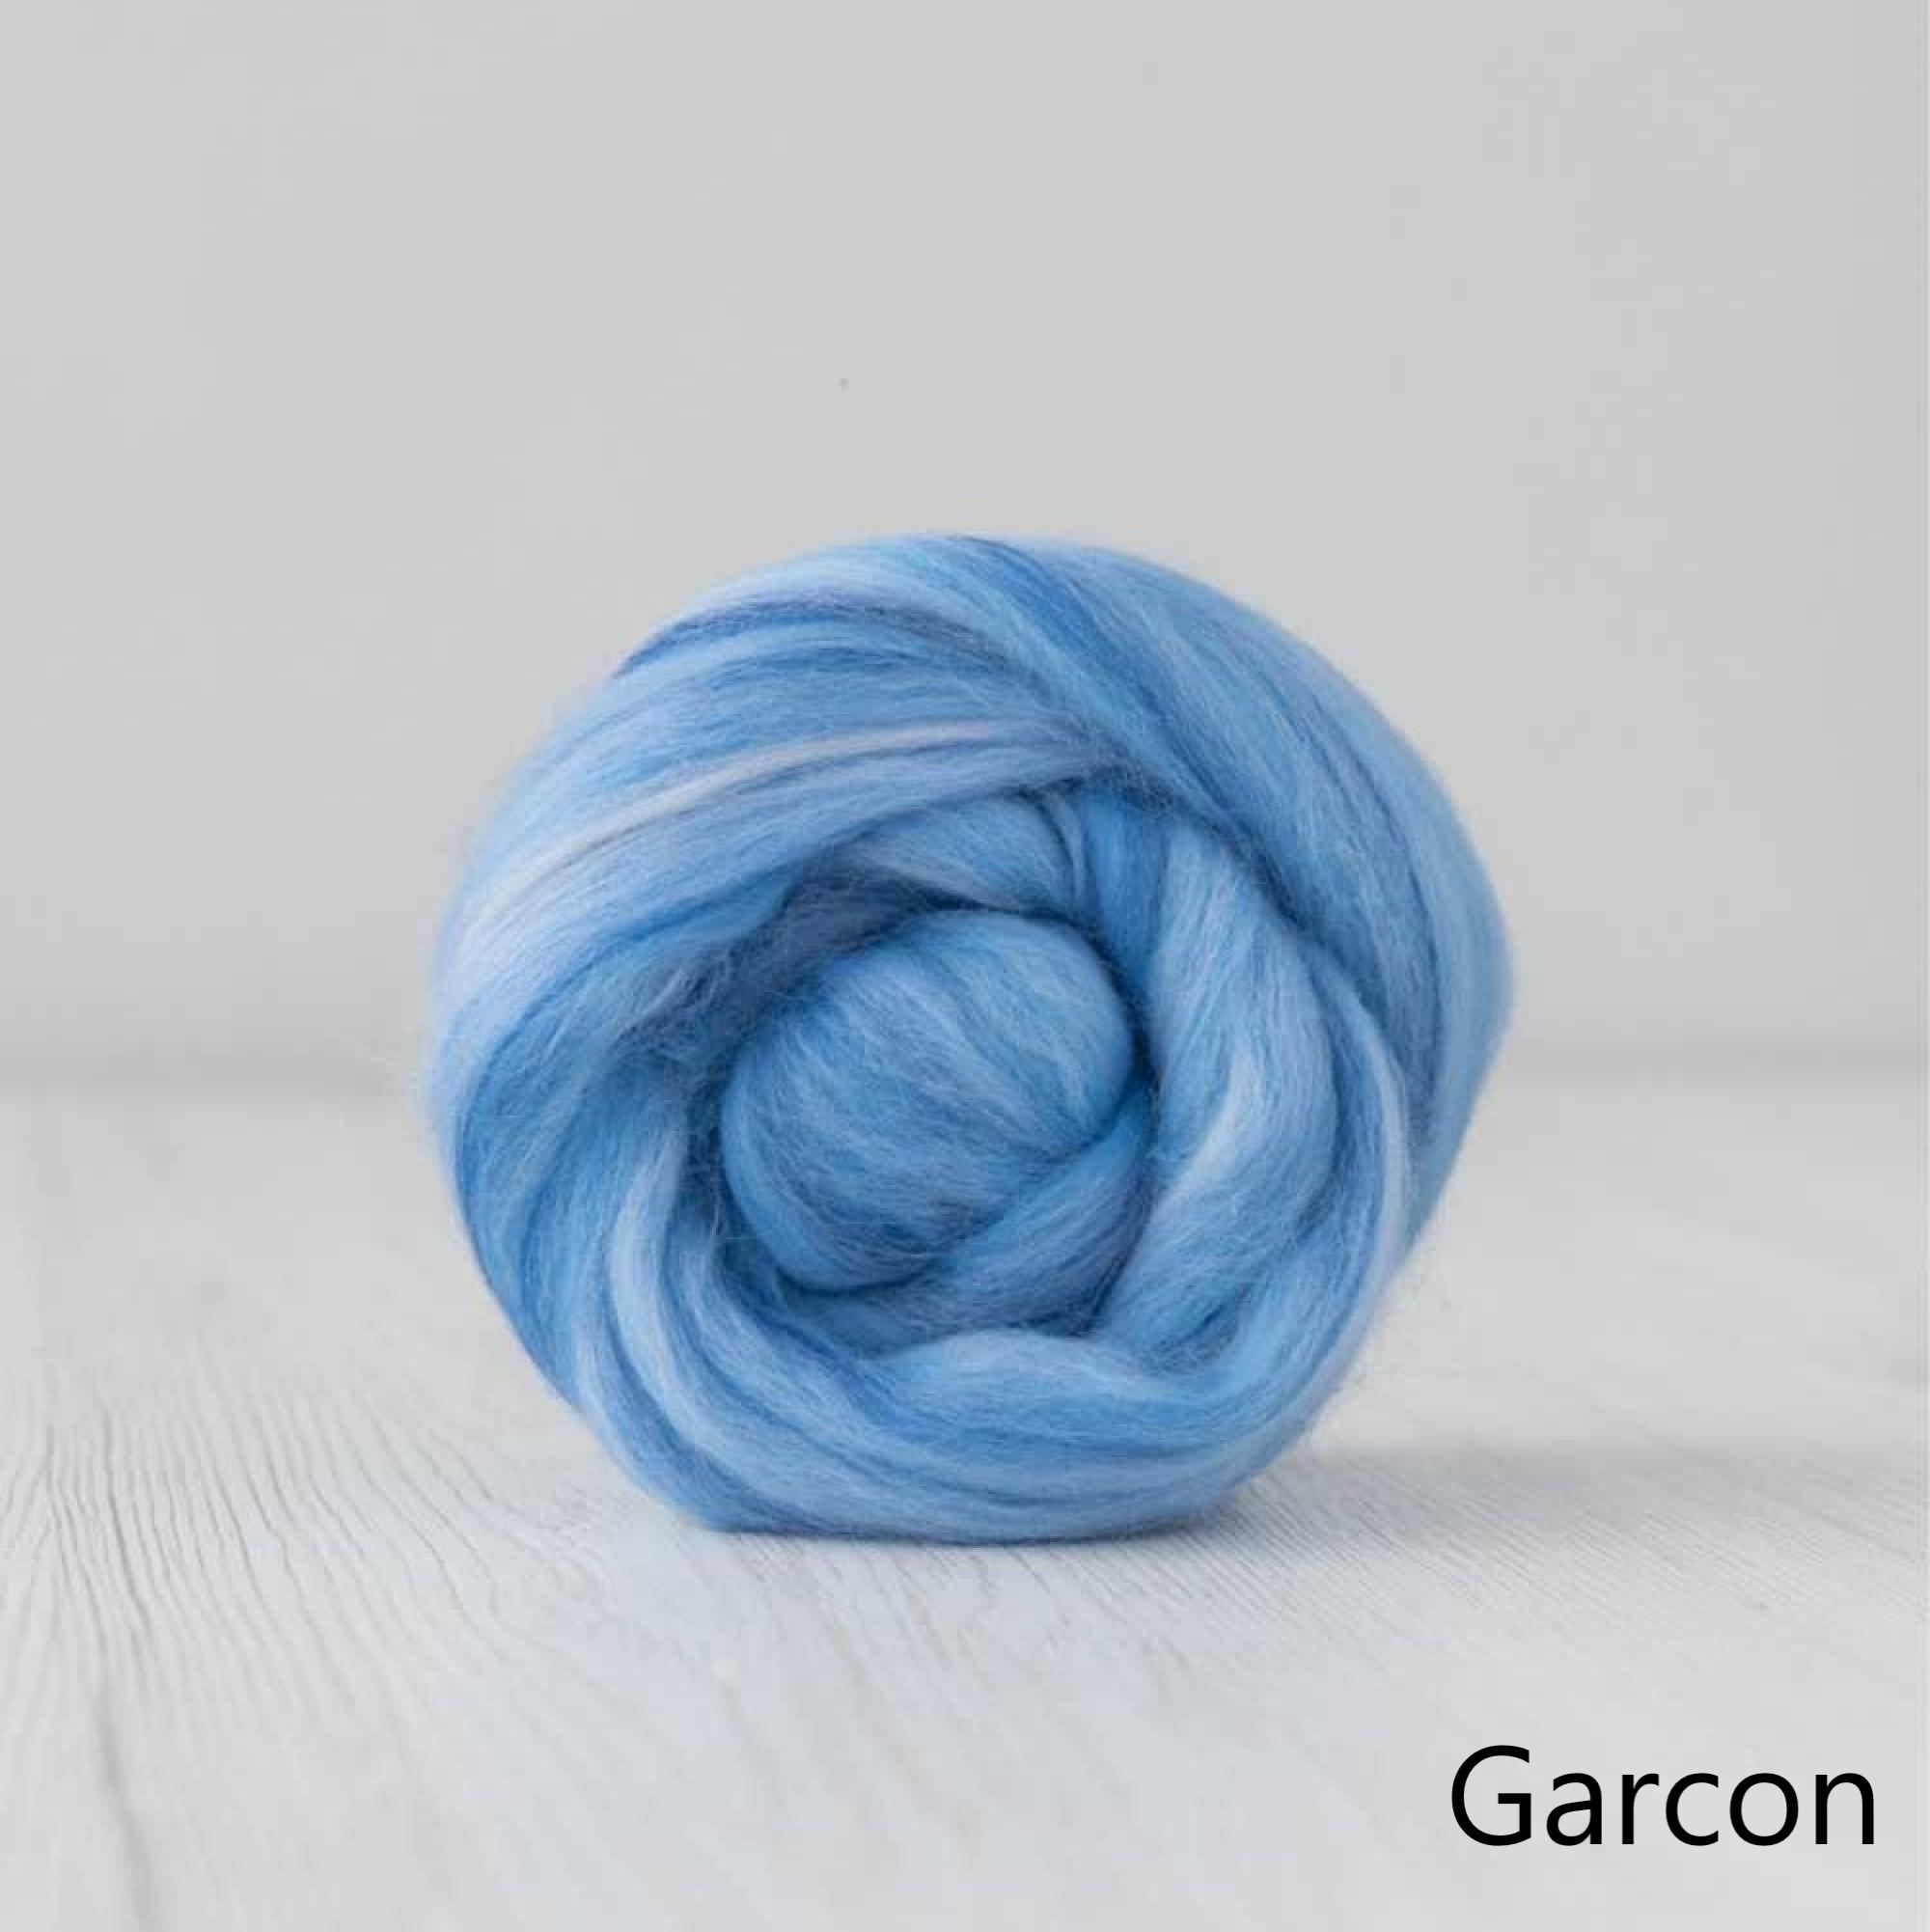 Garcon Merino and Silk Roving